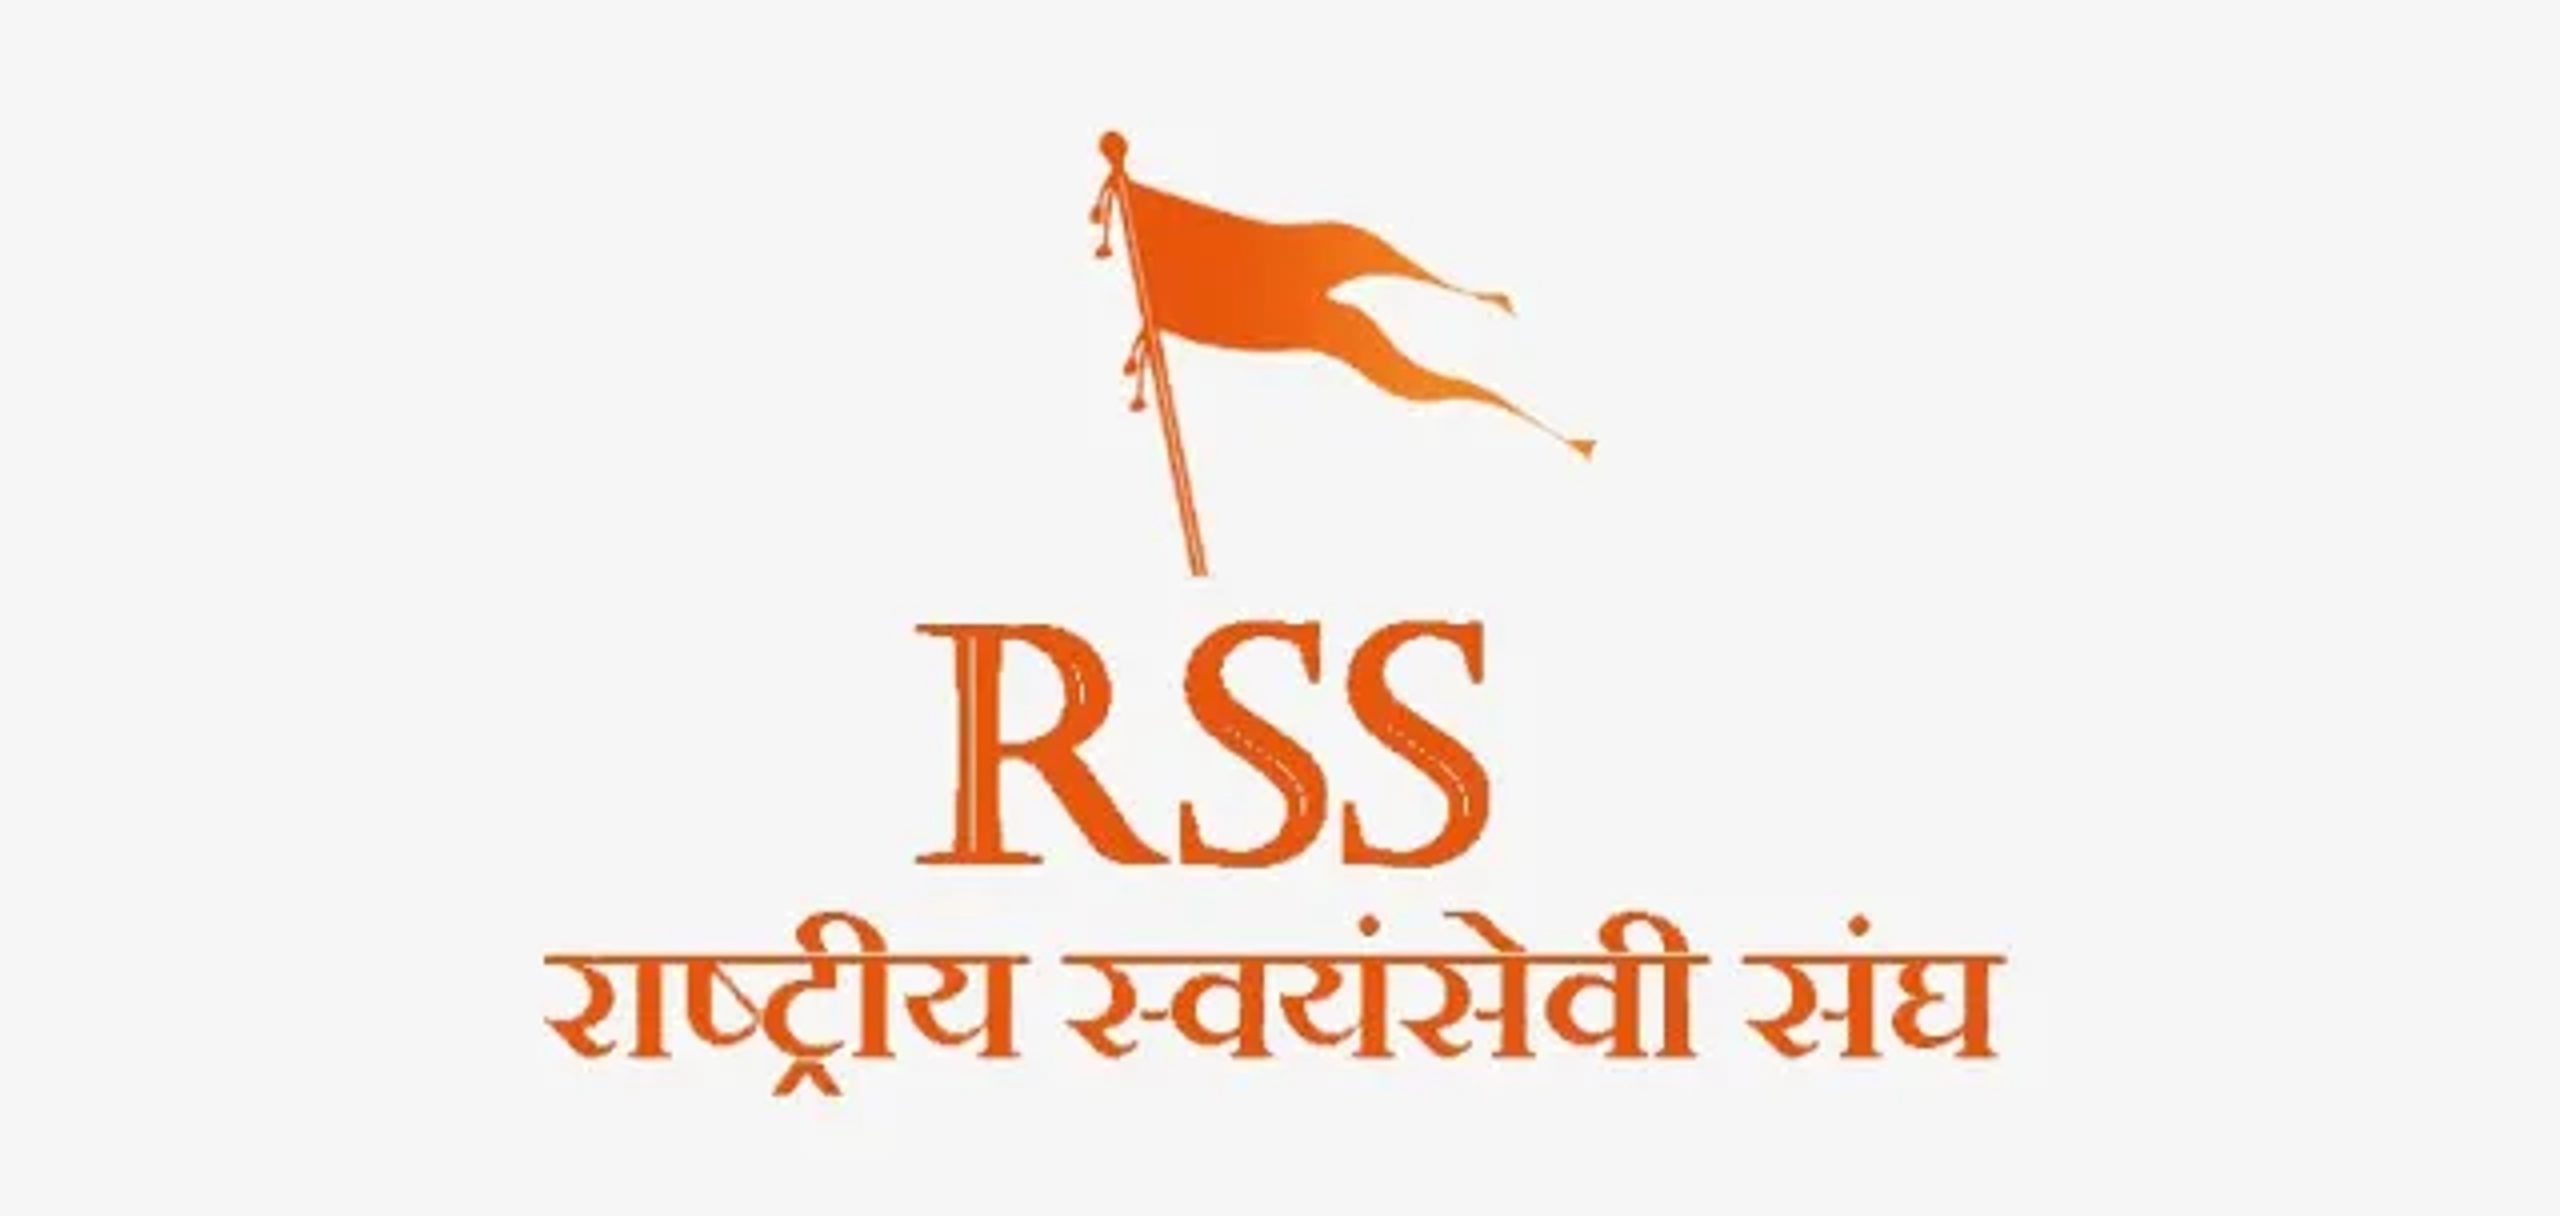 RSS ज्वाइन कैसे करें, जानिए ऑनलाइन और ऑफलाइन तरीका